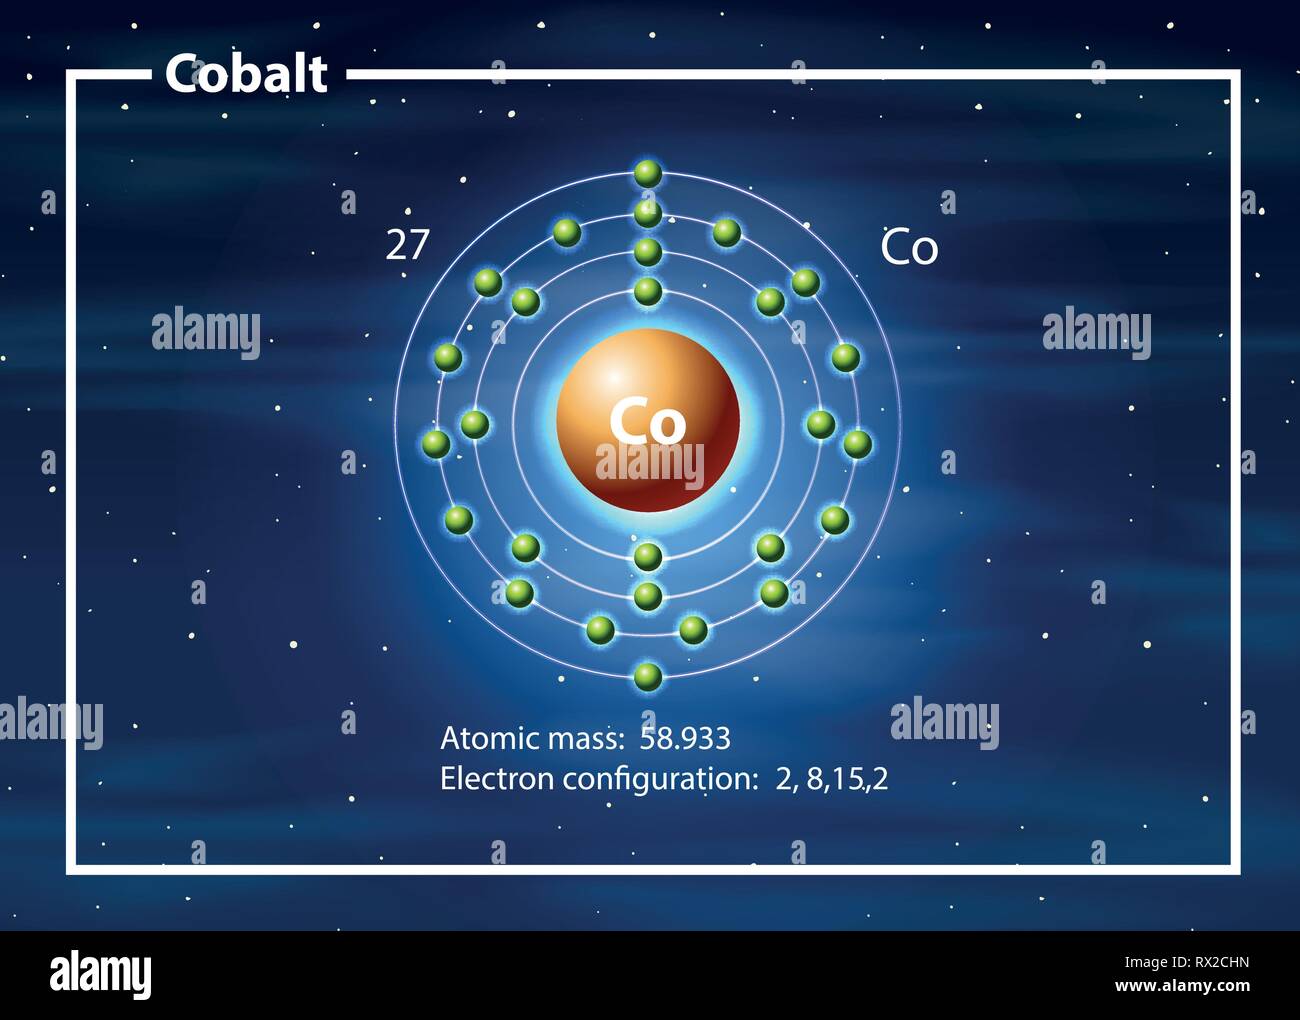 Chemist atom of cobalt diagram illustration Stock Vector